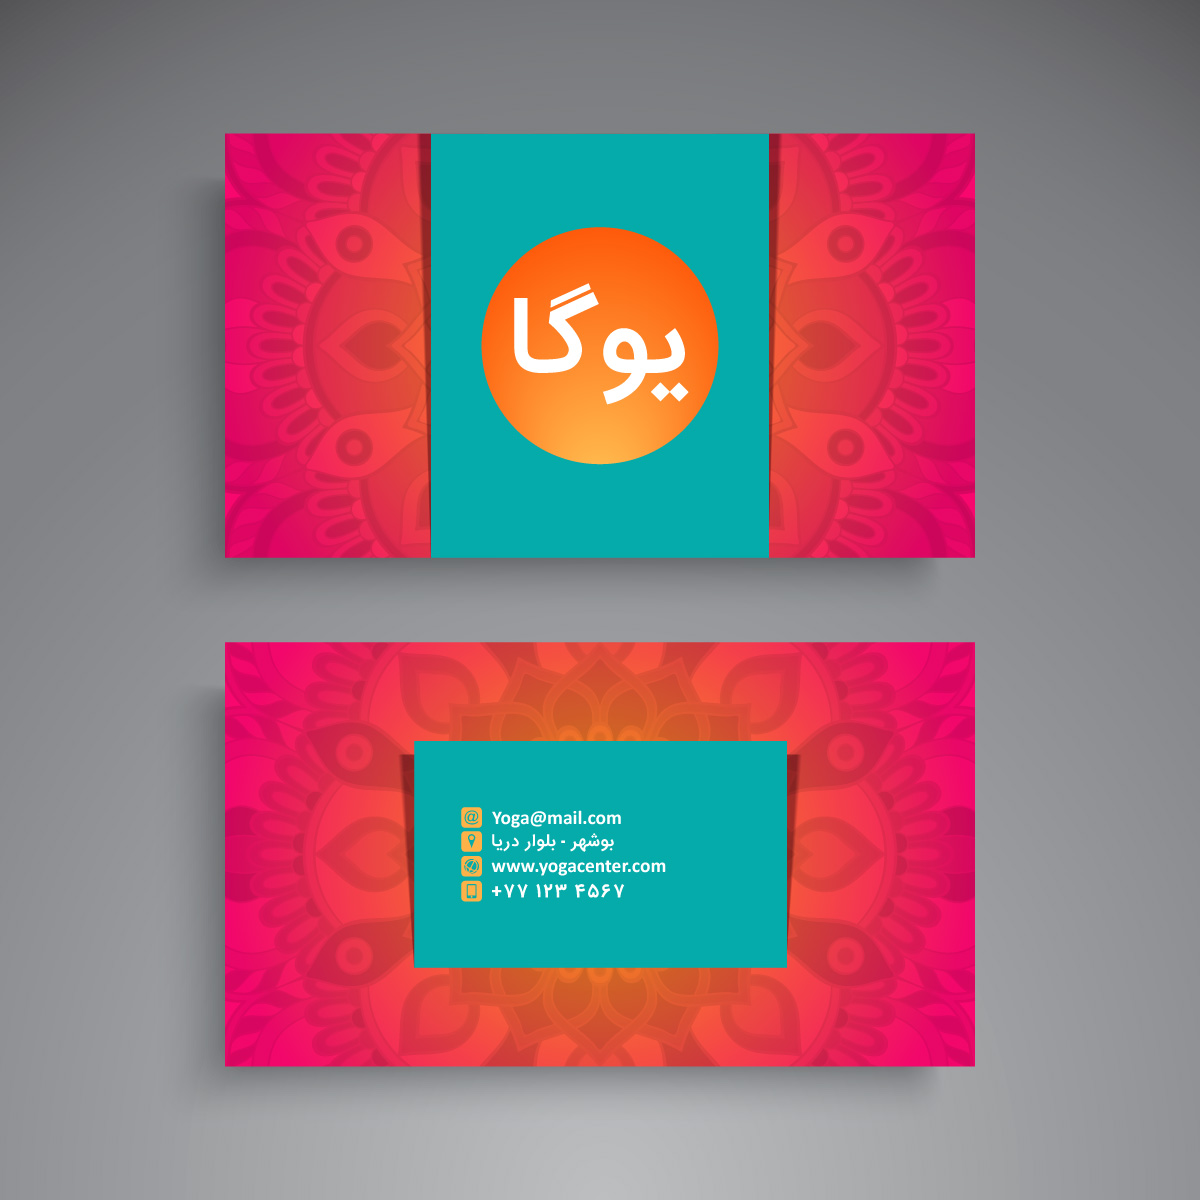 با دانلود طرح کارت ویزیت یوگا لایه باز به یک کارت ویزیت فارسی و قابل ویرایش دسترسی دارید. این کارت طرح ماندالا و دیزاین حرفه‌ای دارد.